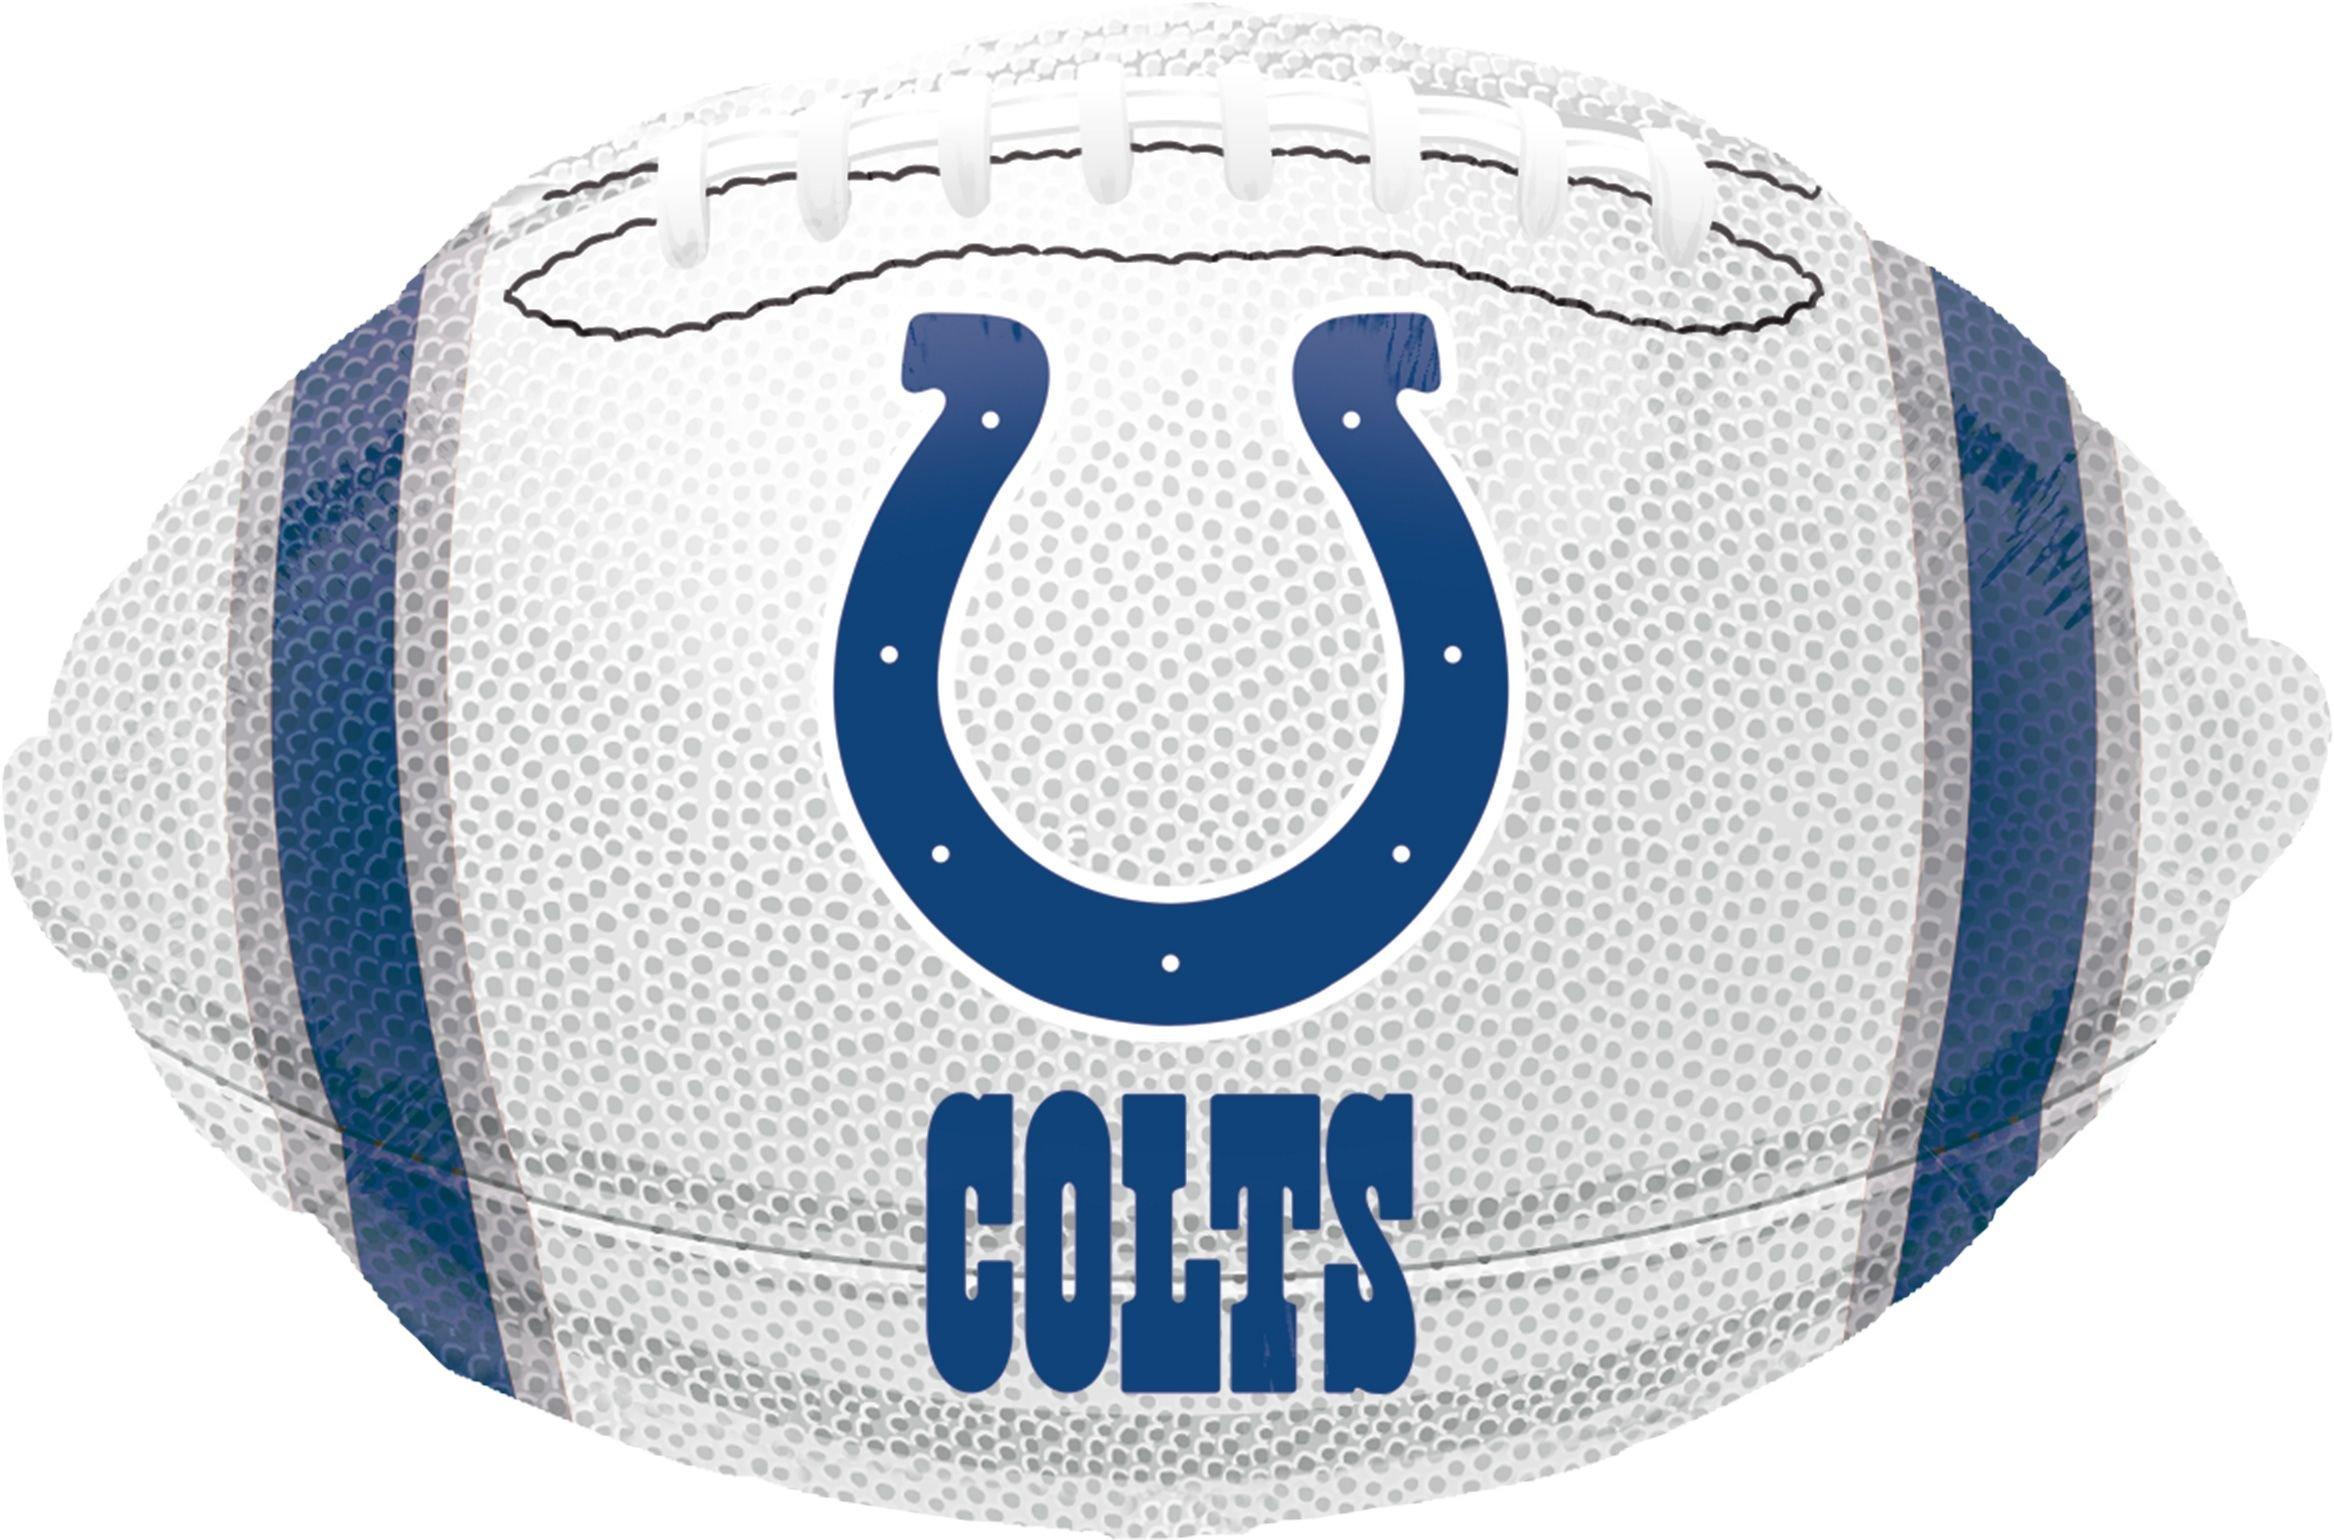 Indianapolis Colts Balloon - Football